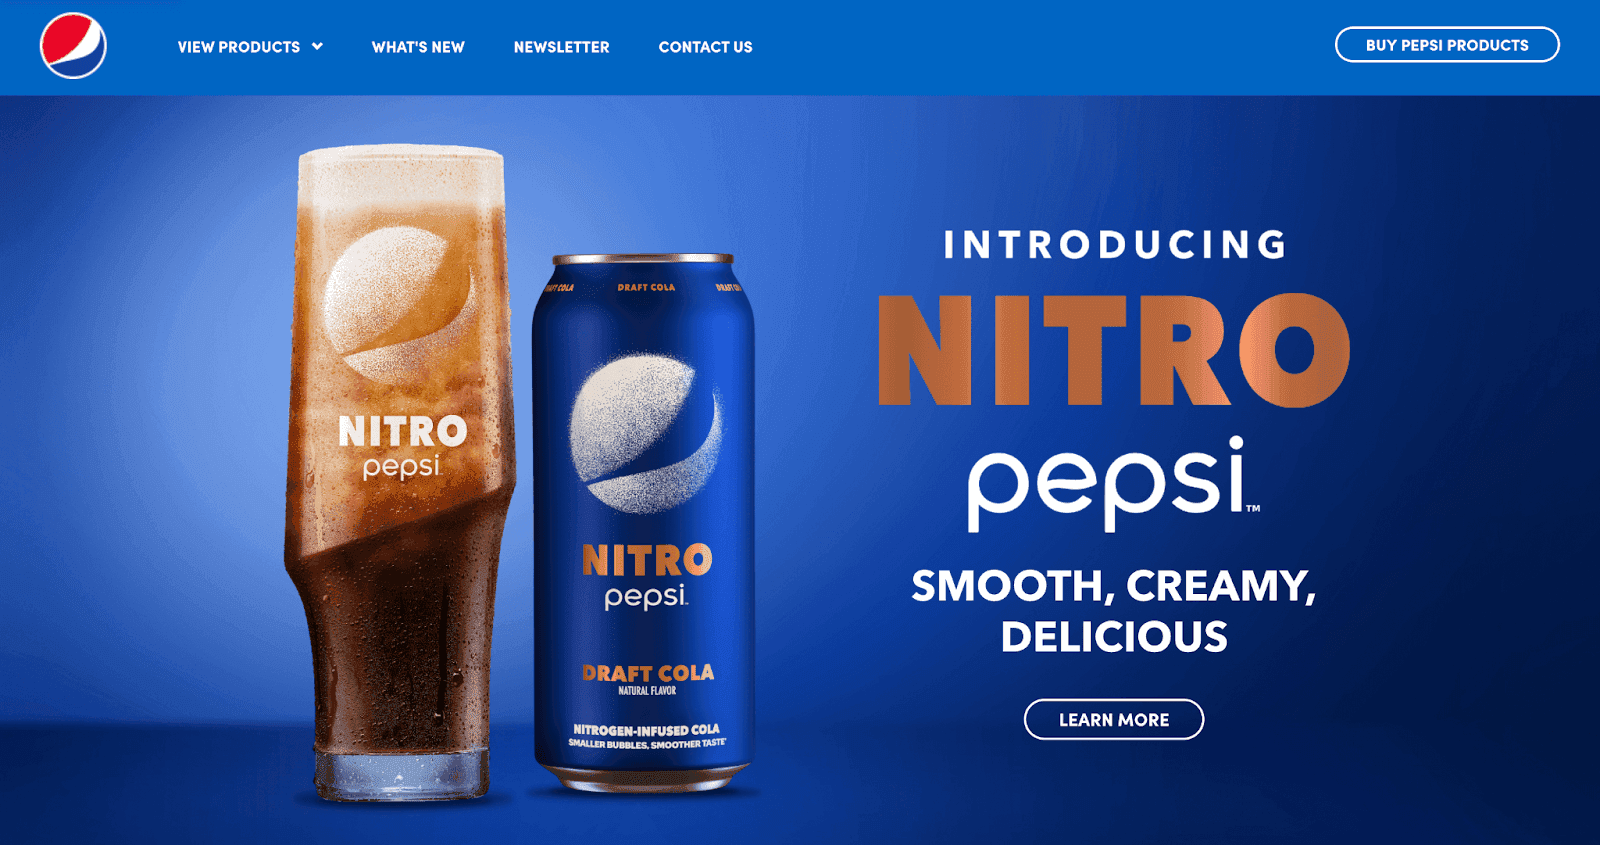 Pepsi Nitro advertisement 